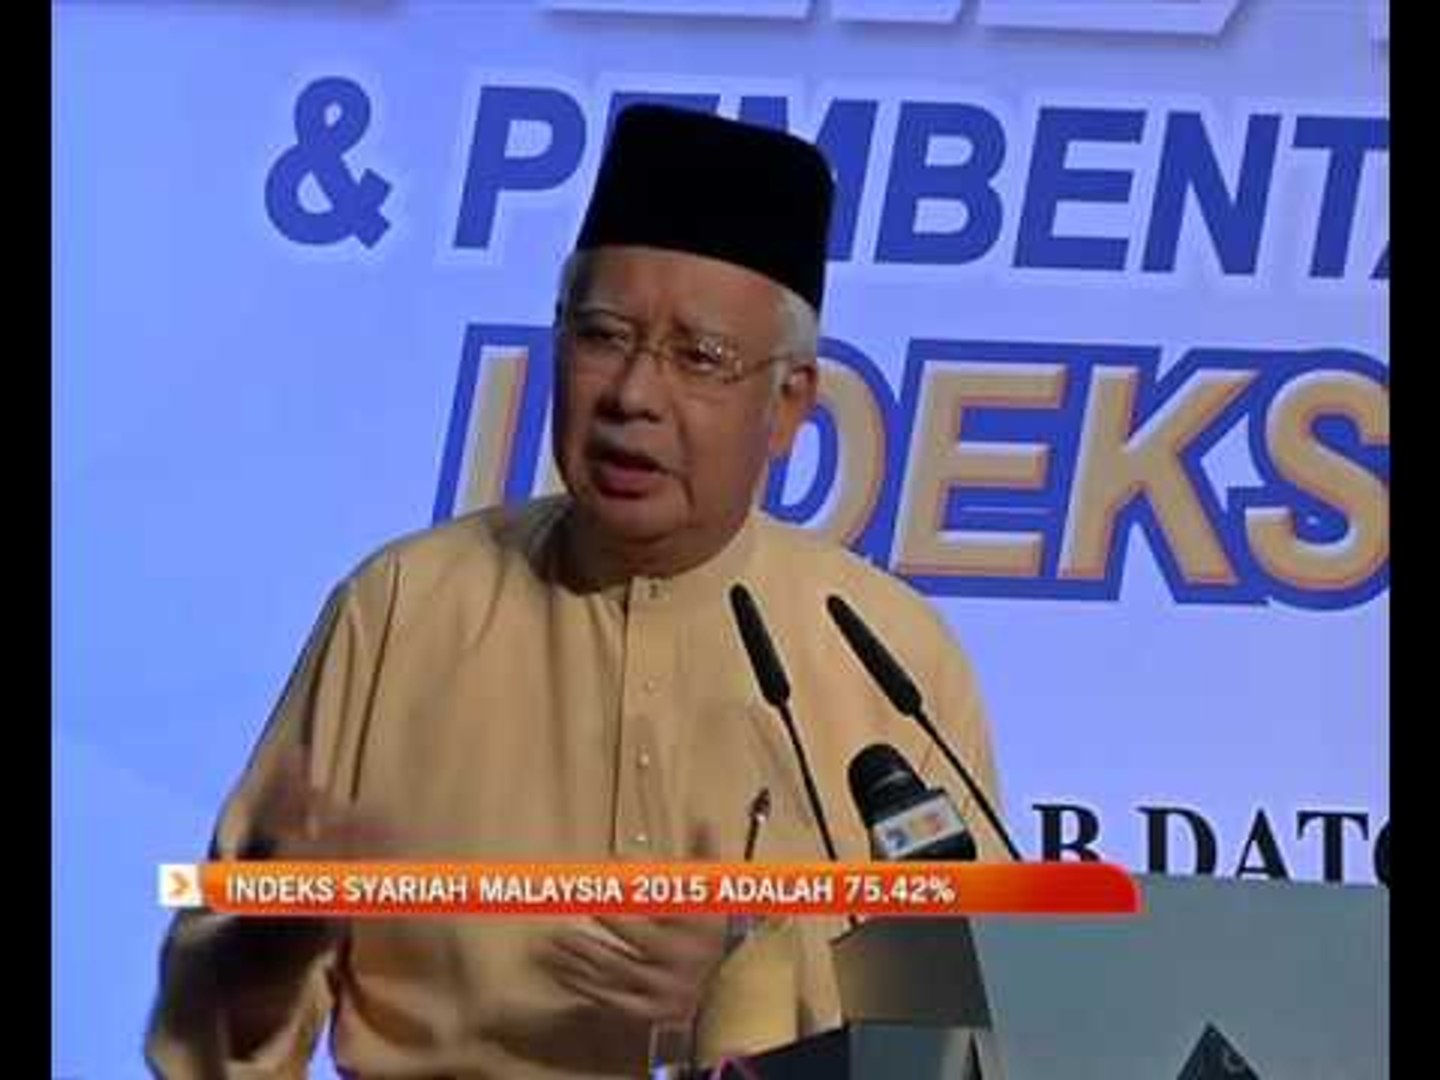 ⁣Indeks Syariah Malaysia 2015 adalah 75.42%